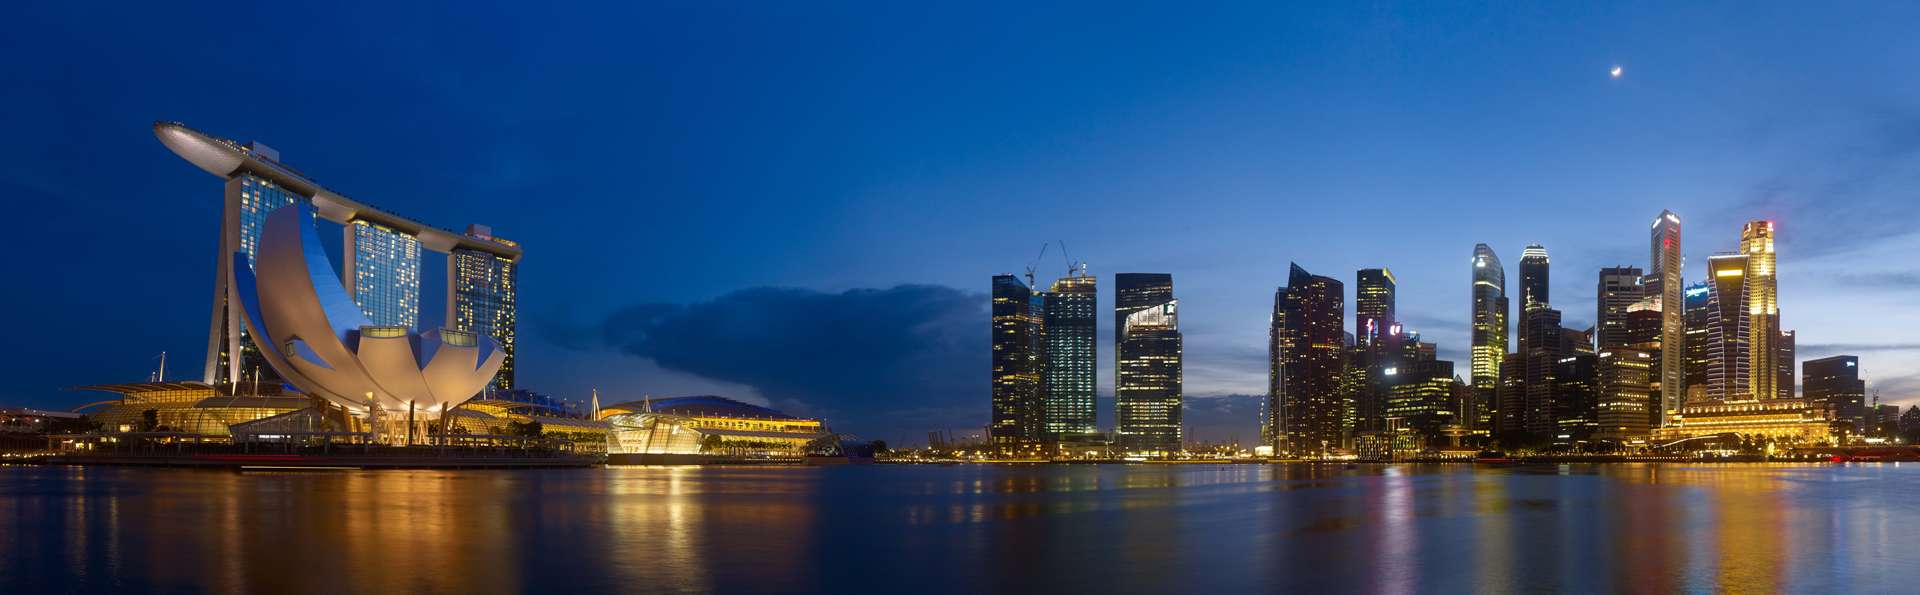 Marina Bay Sands: Hotel, Casino, Miradores y Vistas Singapur - Foro Sudeste Asiático